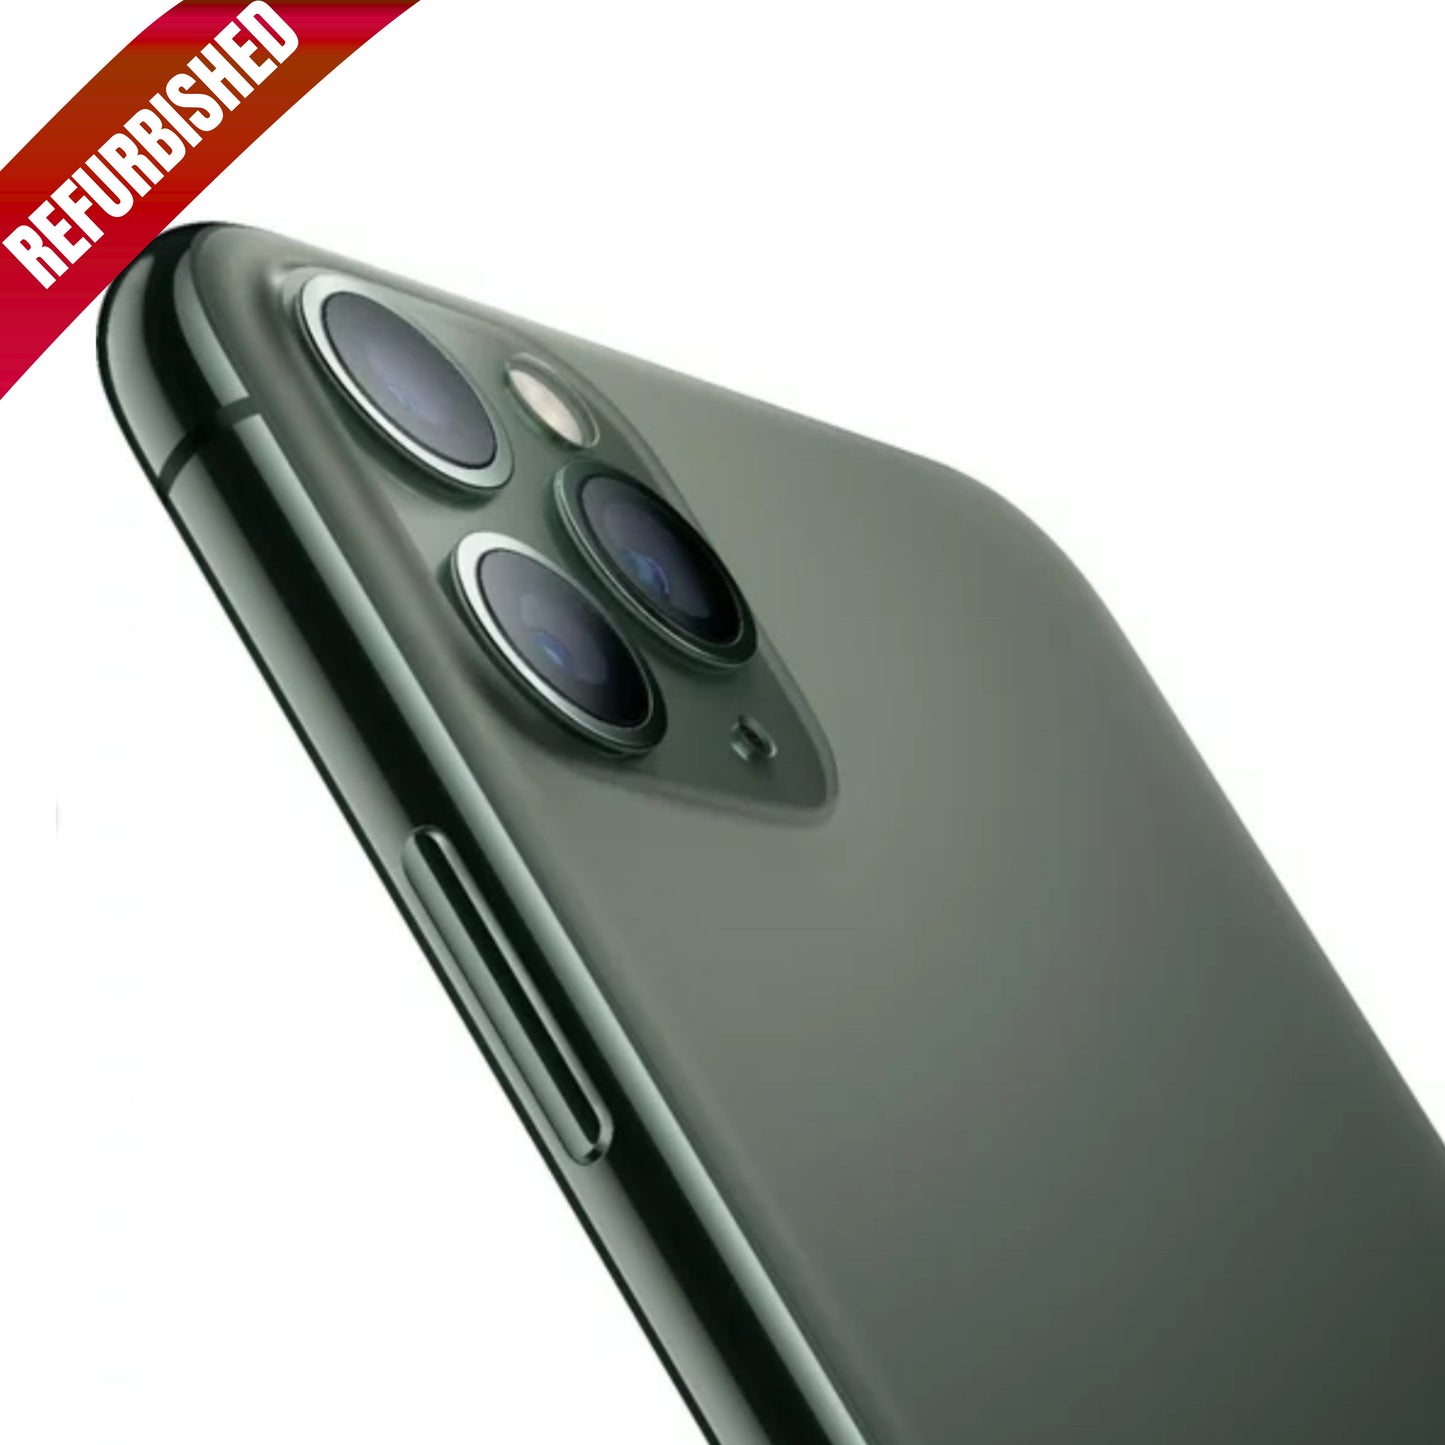 iPhone 11 Pro Max Verde Medianoche 256 GB (Desbloqueado) Reacondicionado